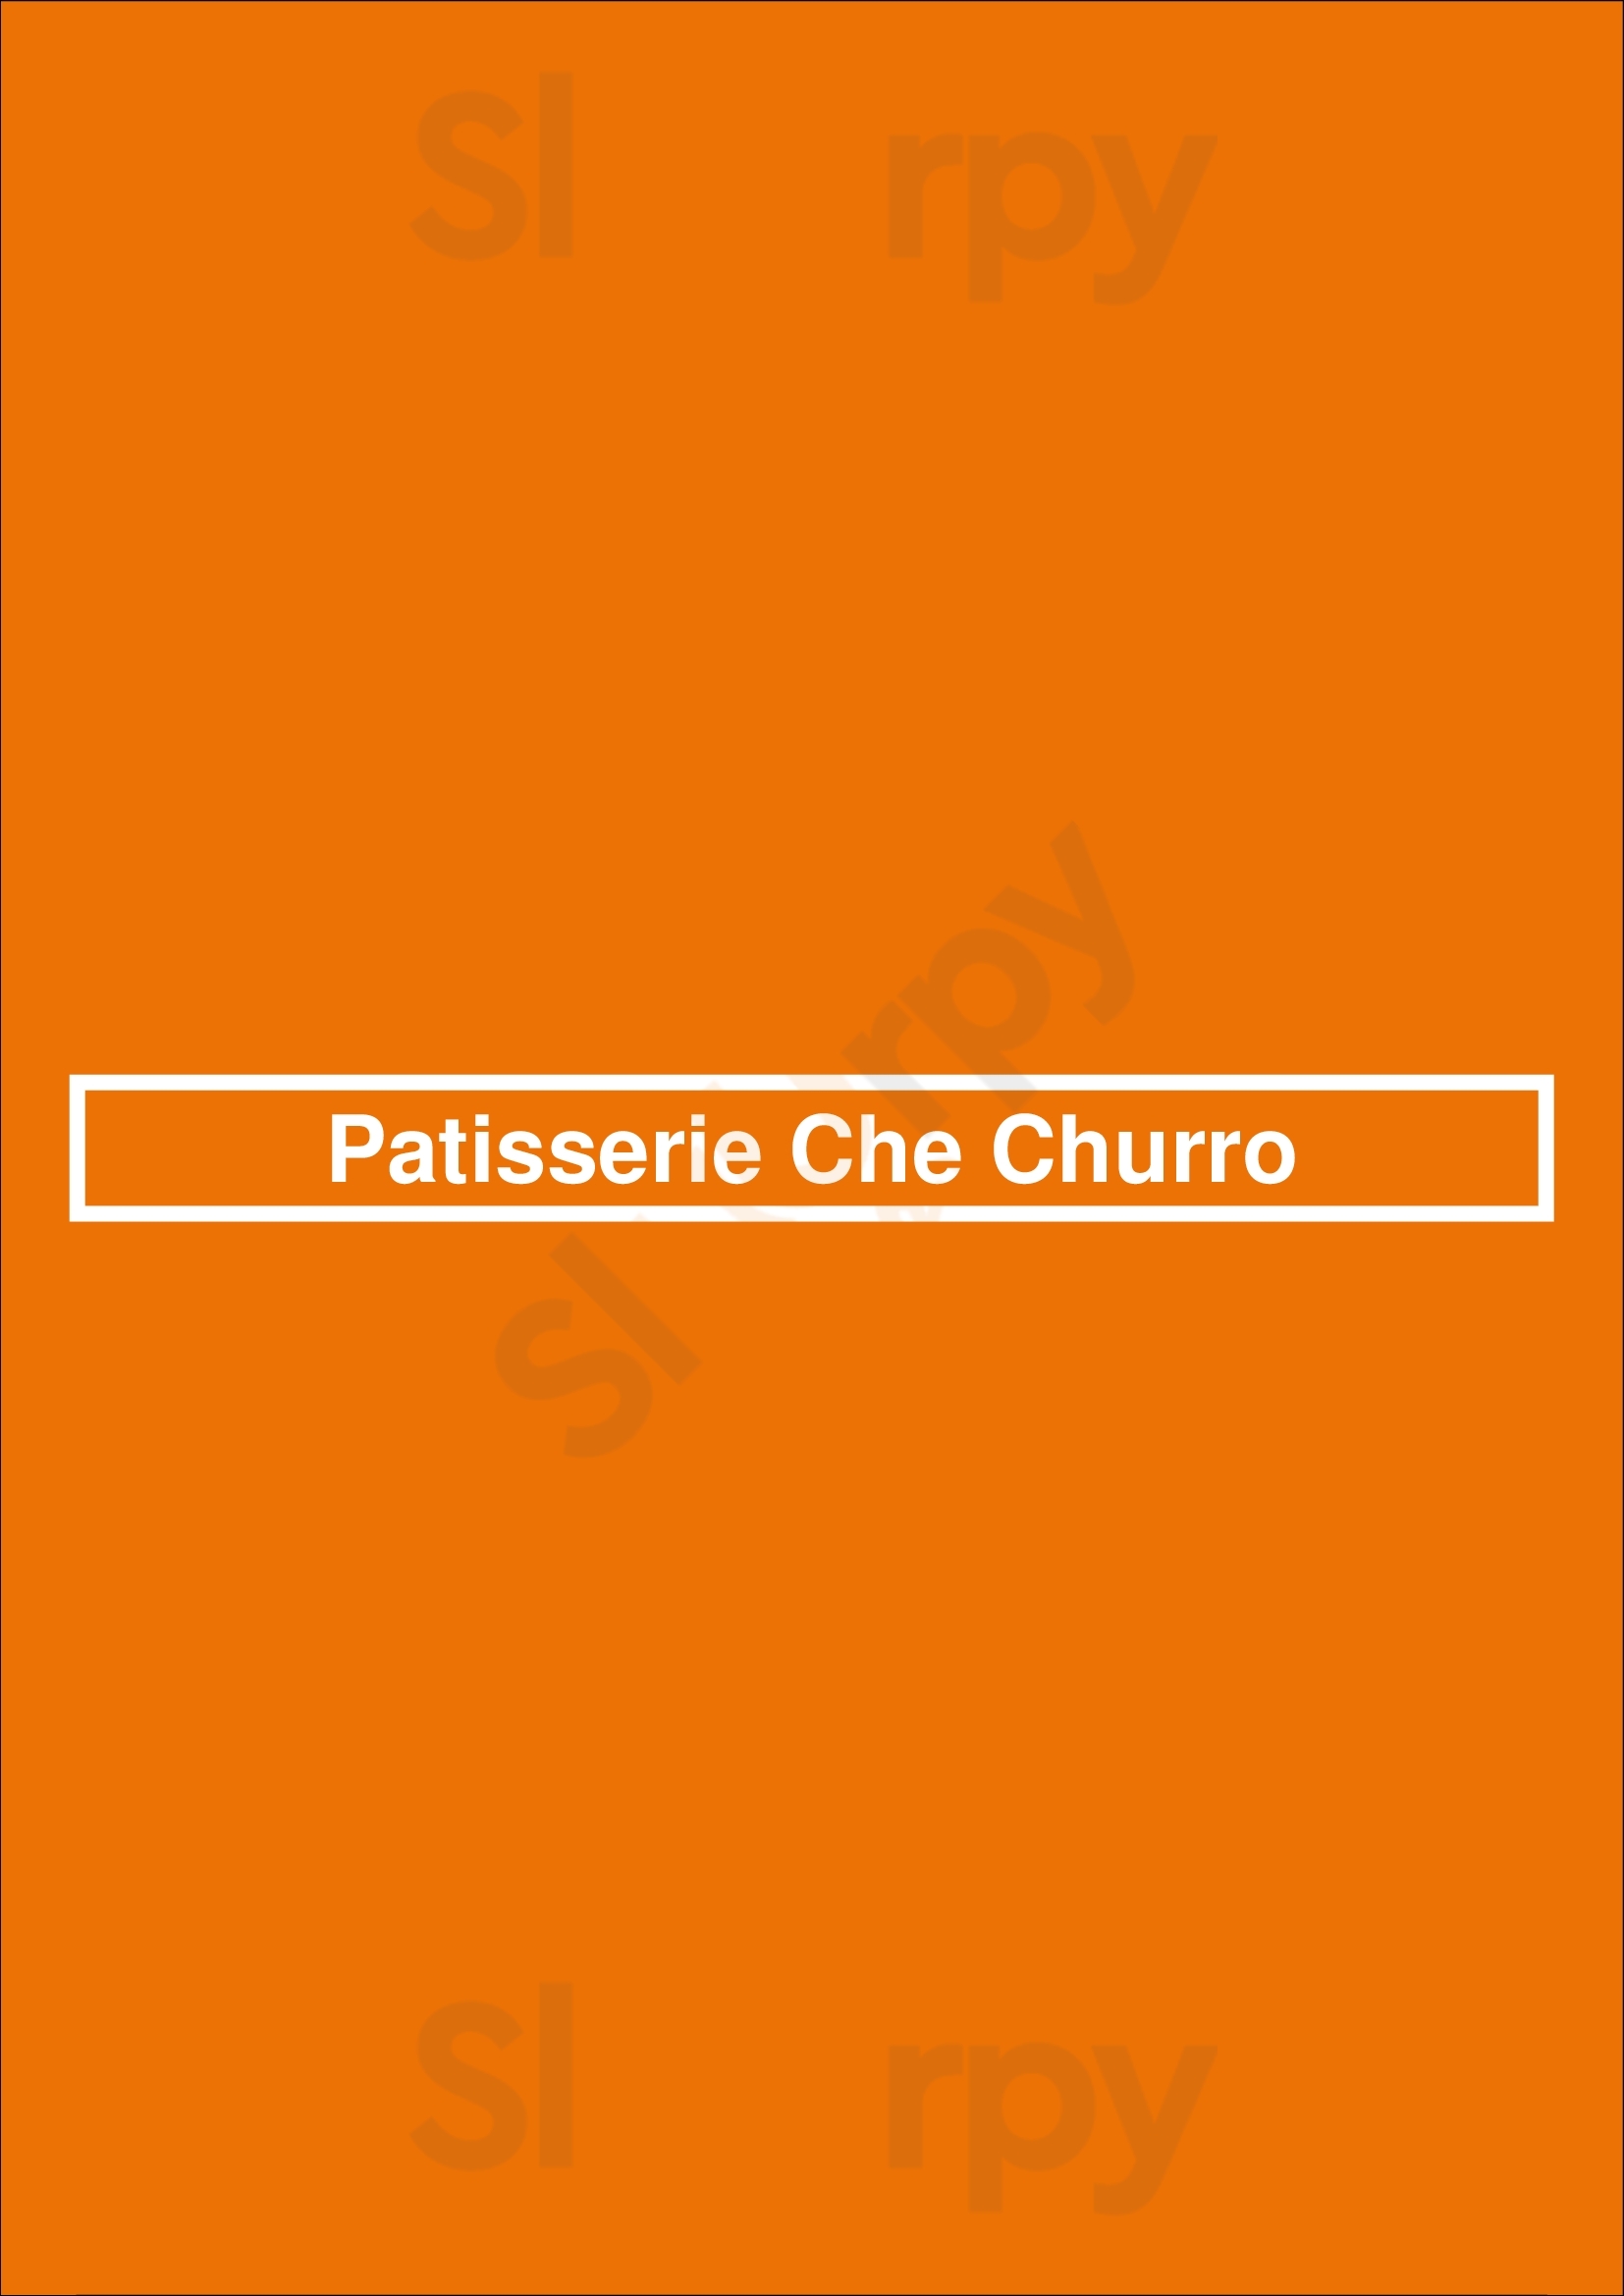 Patisserie Che Churro Montreal Menu - 1